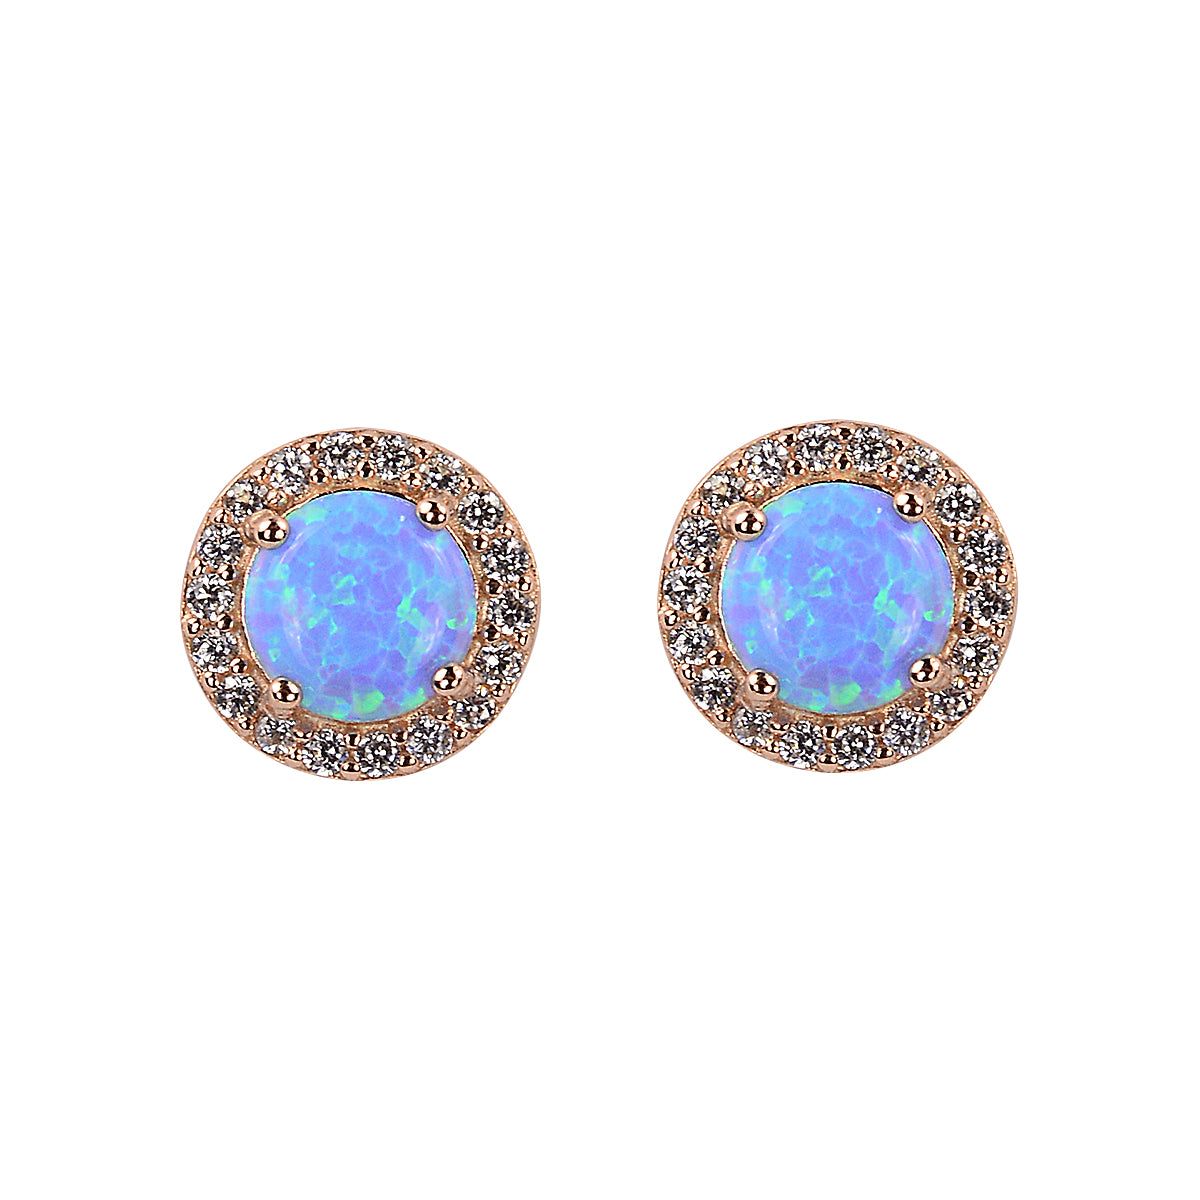 Opal rose gold earrings 